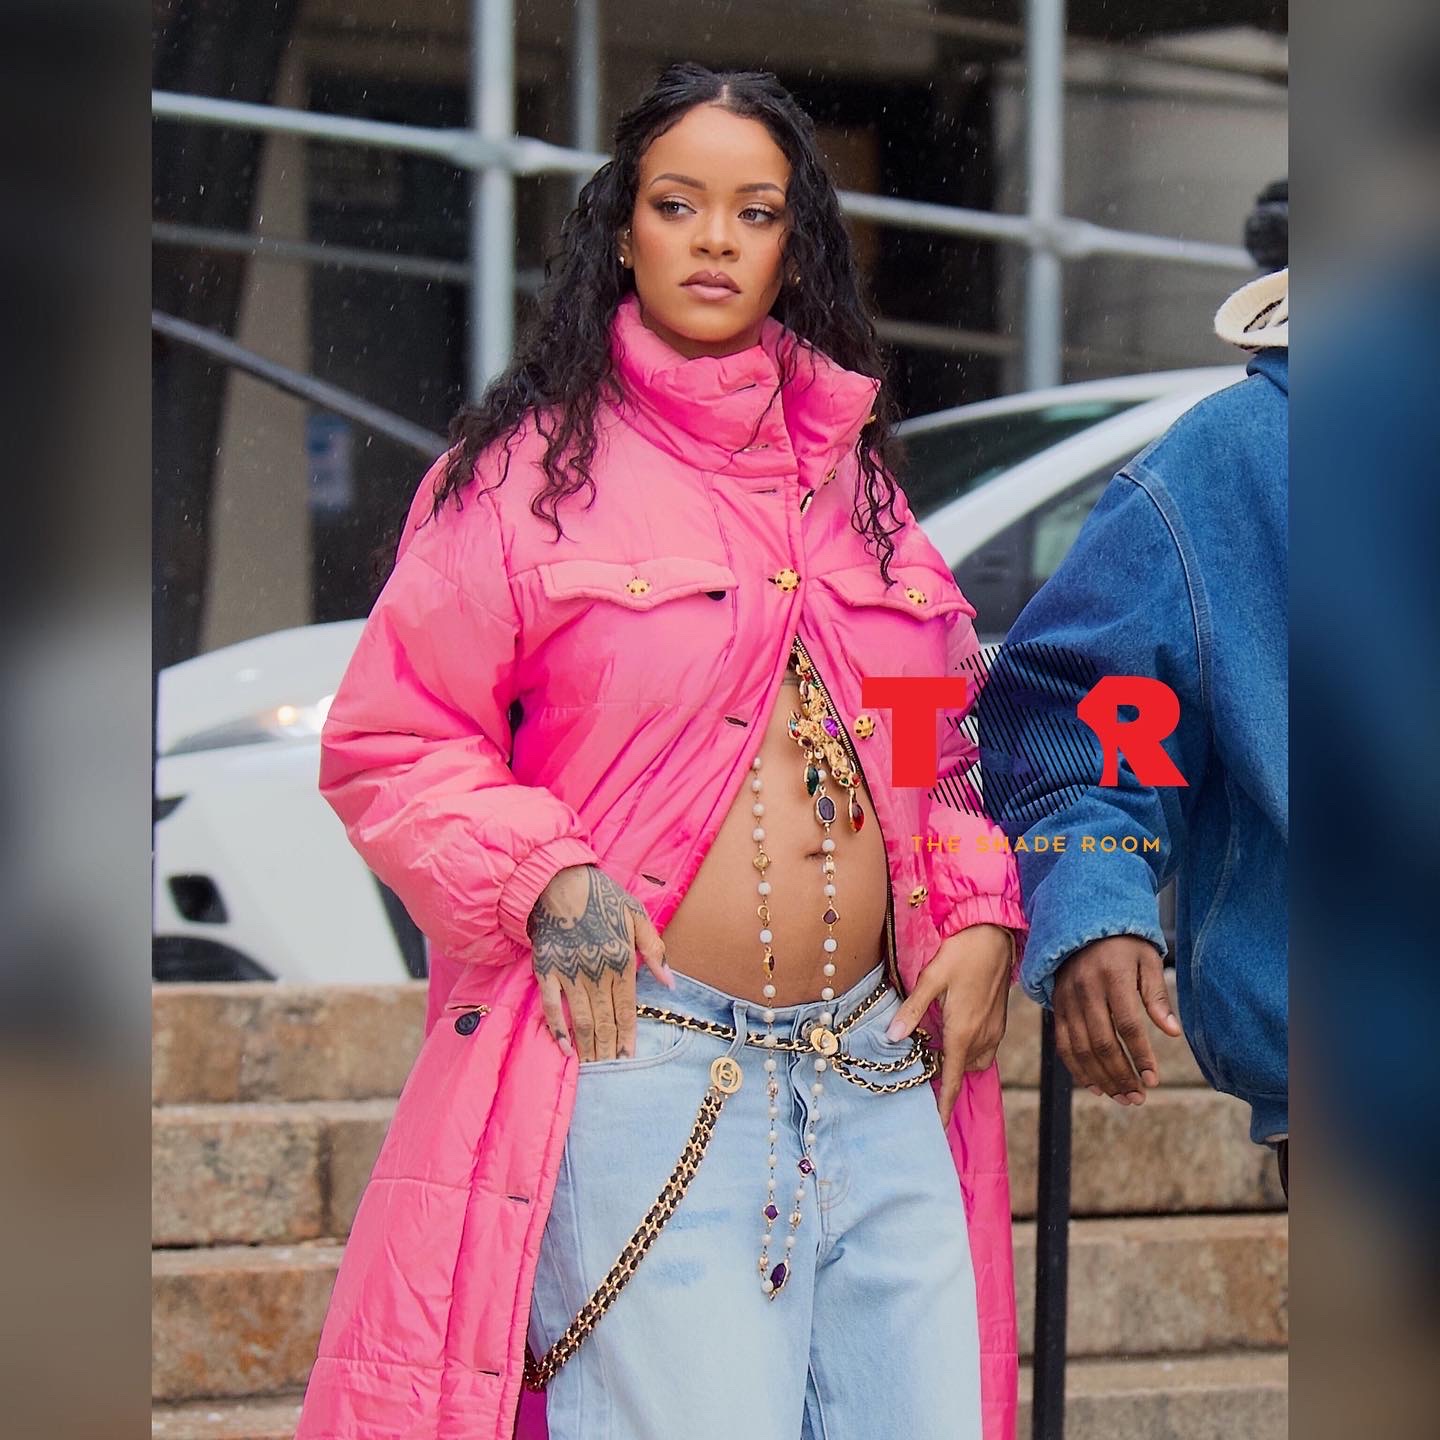 Rihanna and A$AP Rocky 